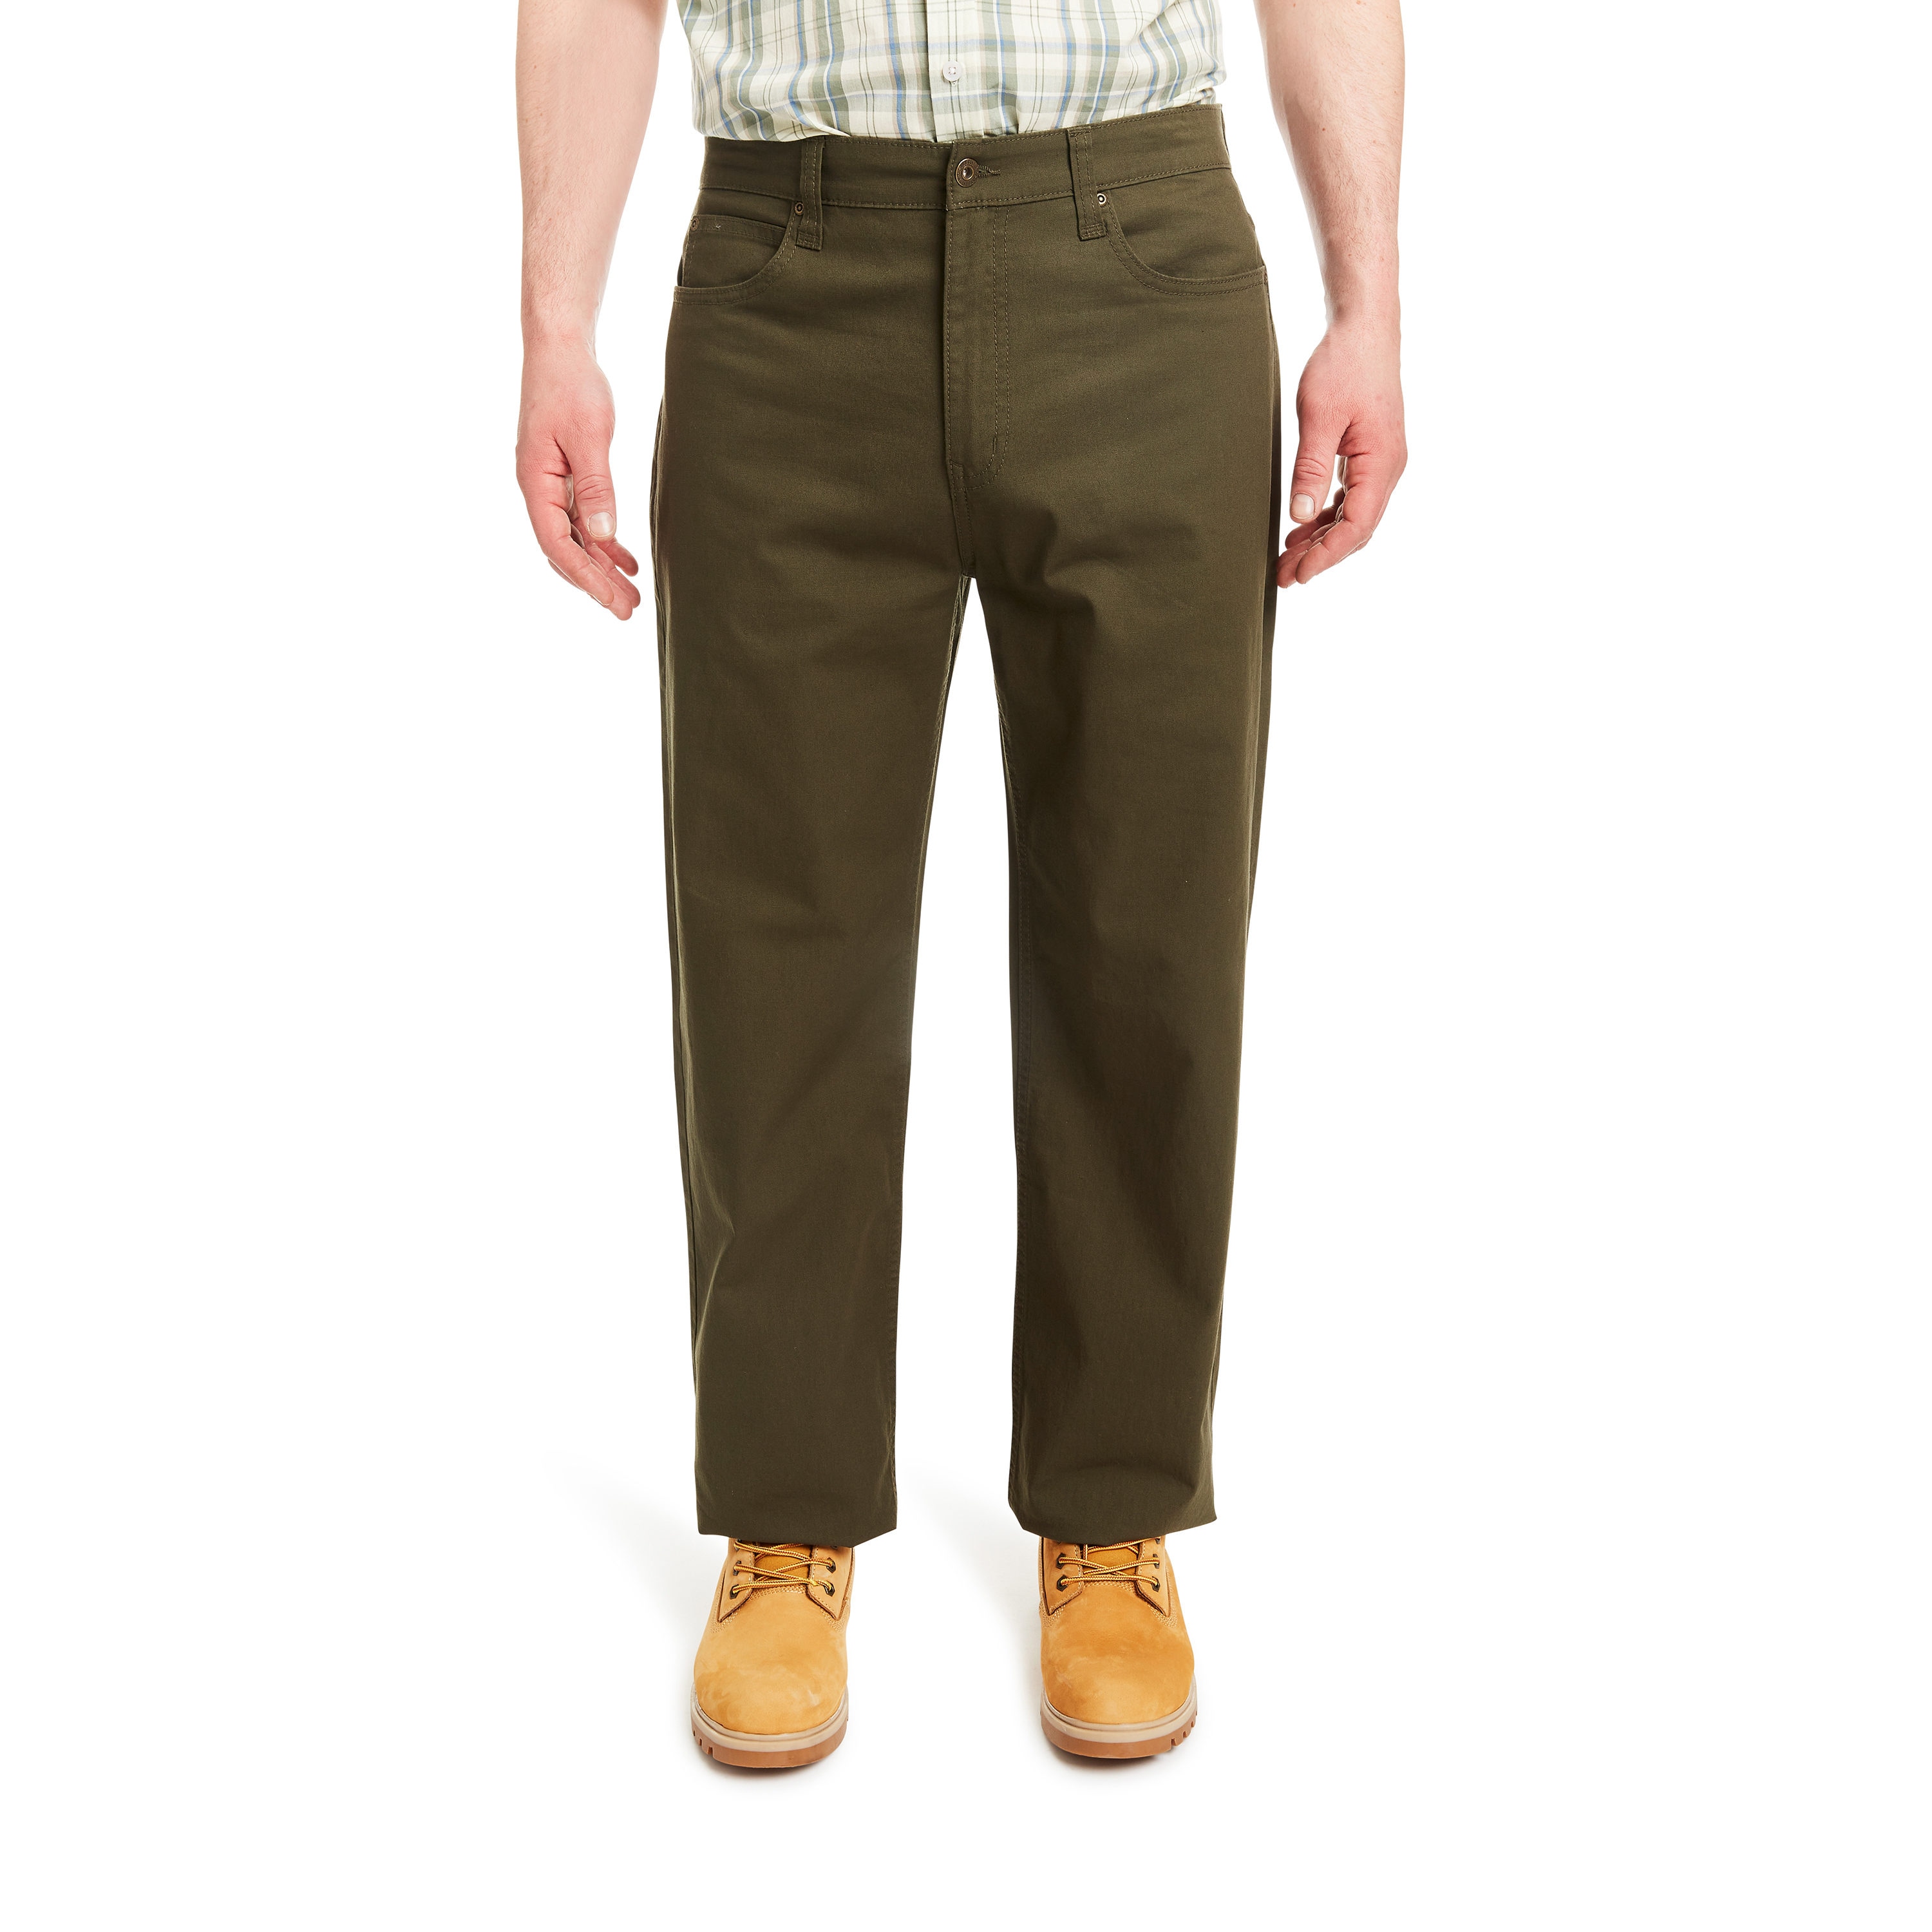 Dickies Men's 874 Original Fit Classic Work Pants Olive Green 36X32